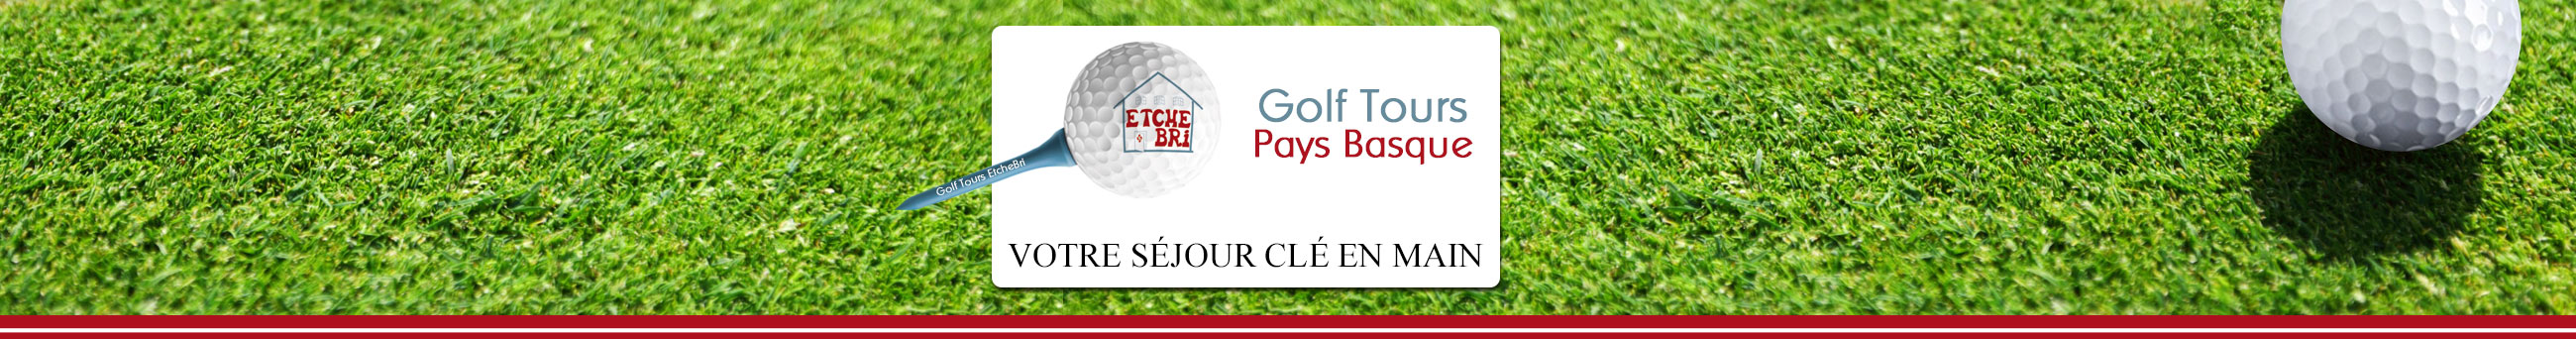 Golf tours pays basque - stage de golf et séjour en chambre d'hôtes Etchebri